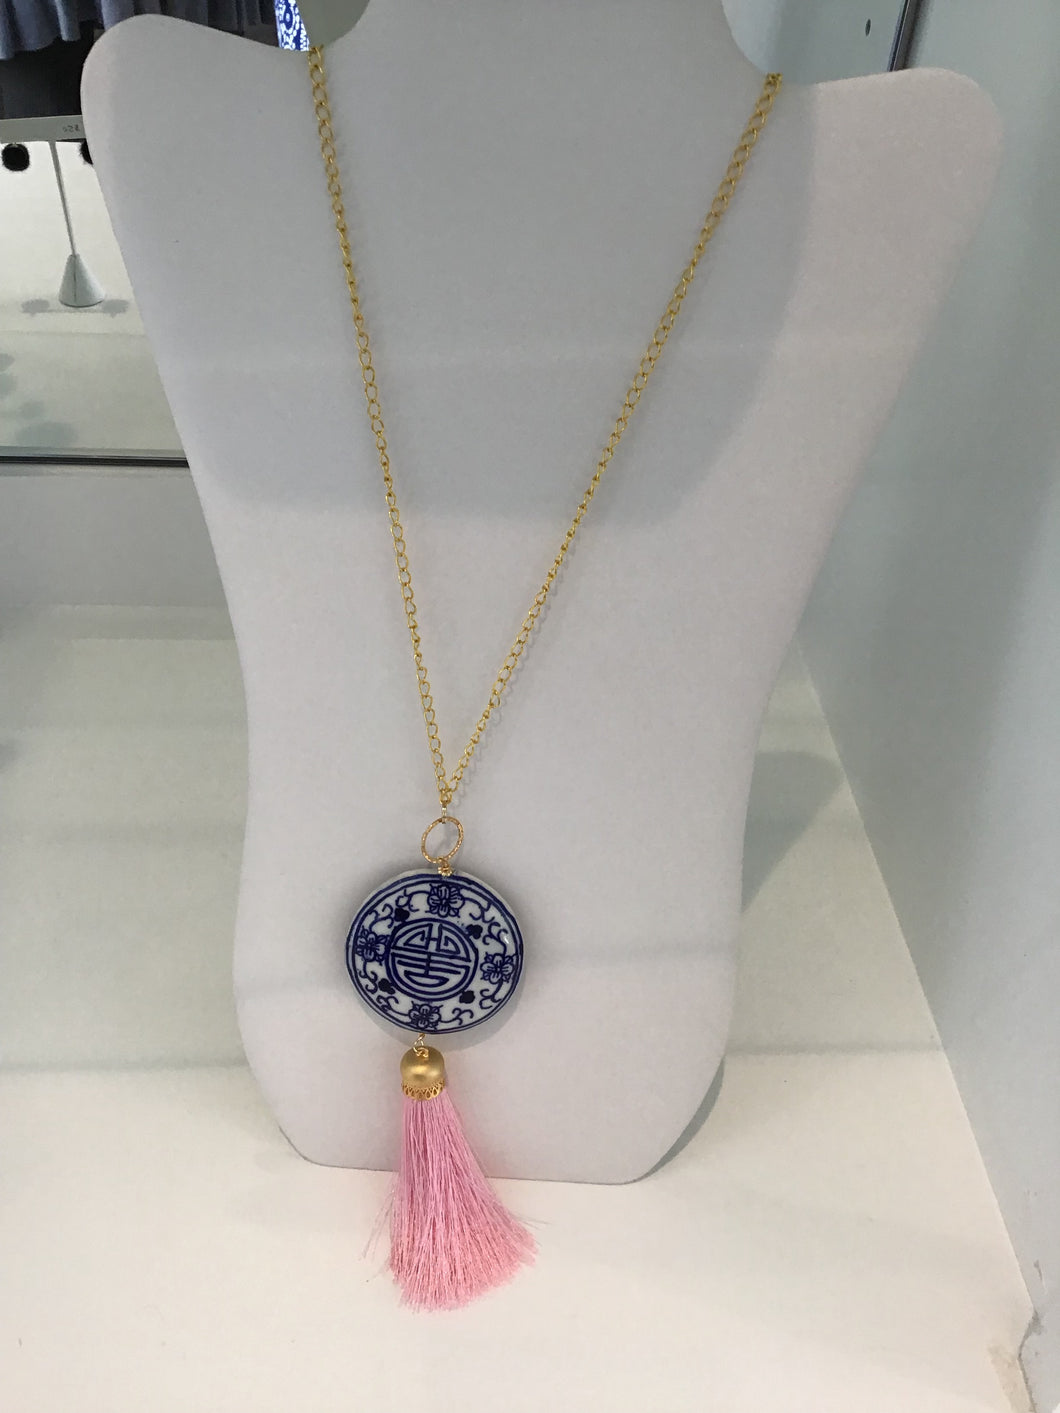 Medallion Necklace w/tassel by Julie Ryan